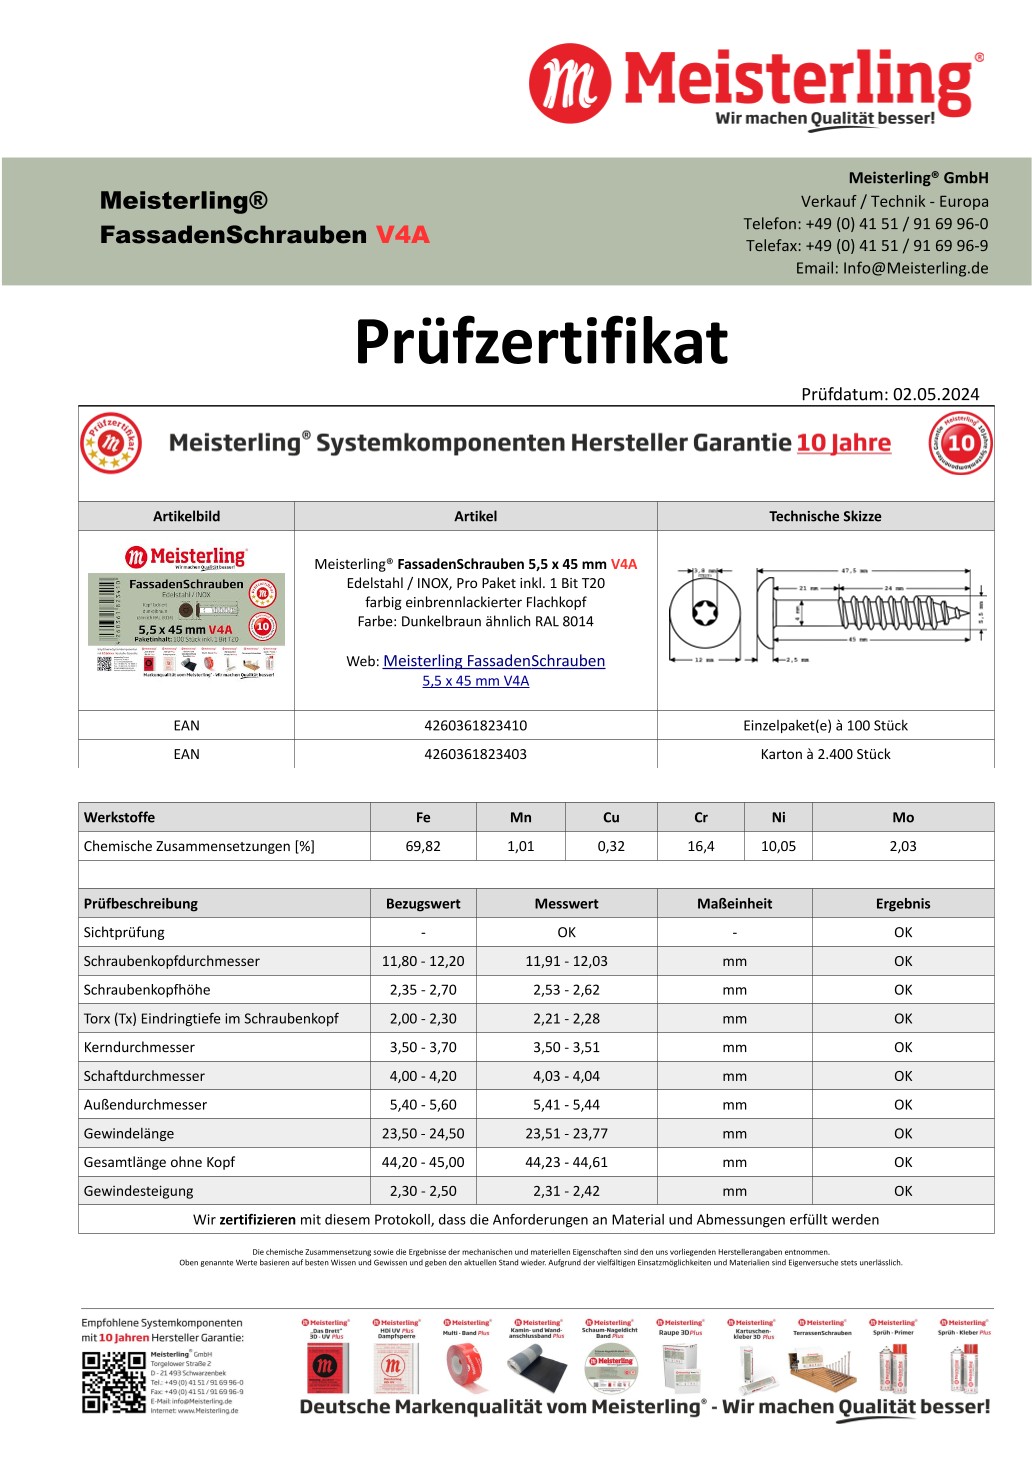 Prüfzertifikat Meisterling® FassadenSchrauben 5,5 x 45 mm V4a dunkelbraun